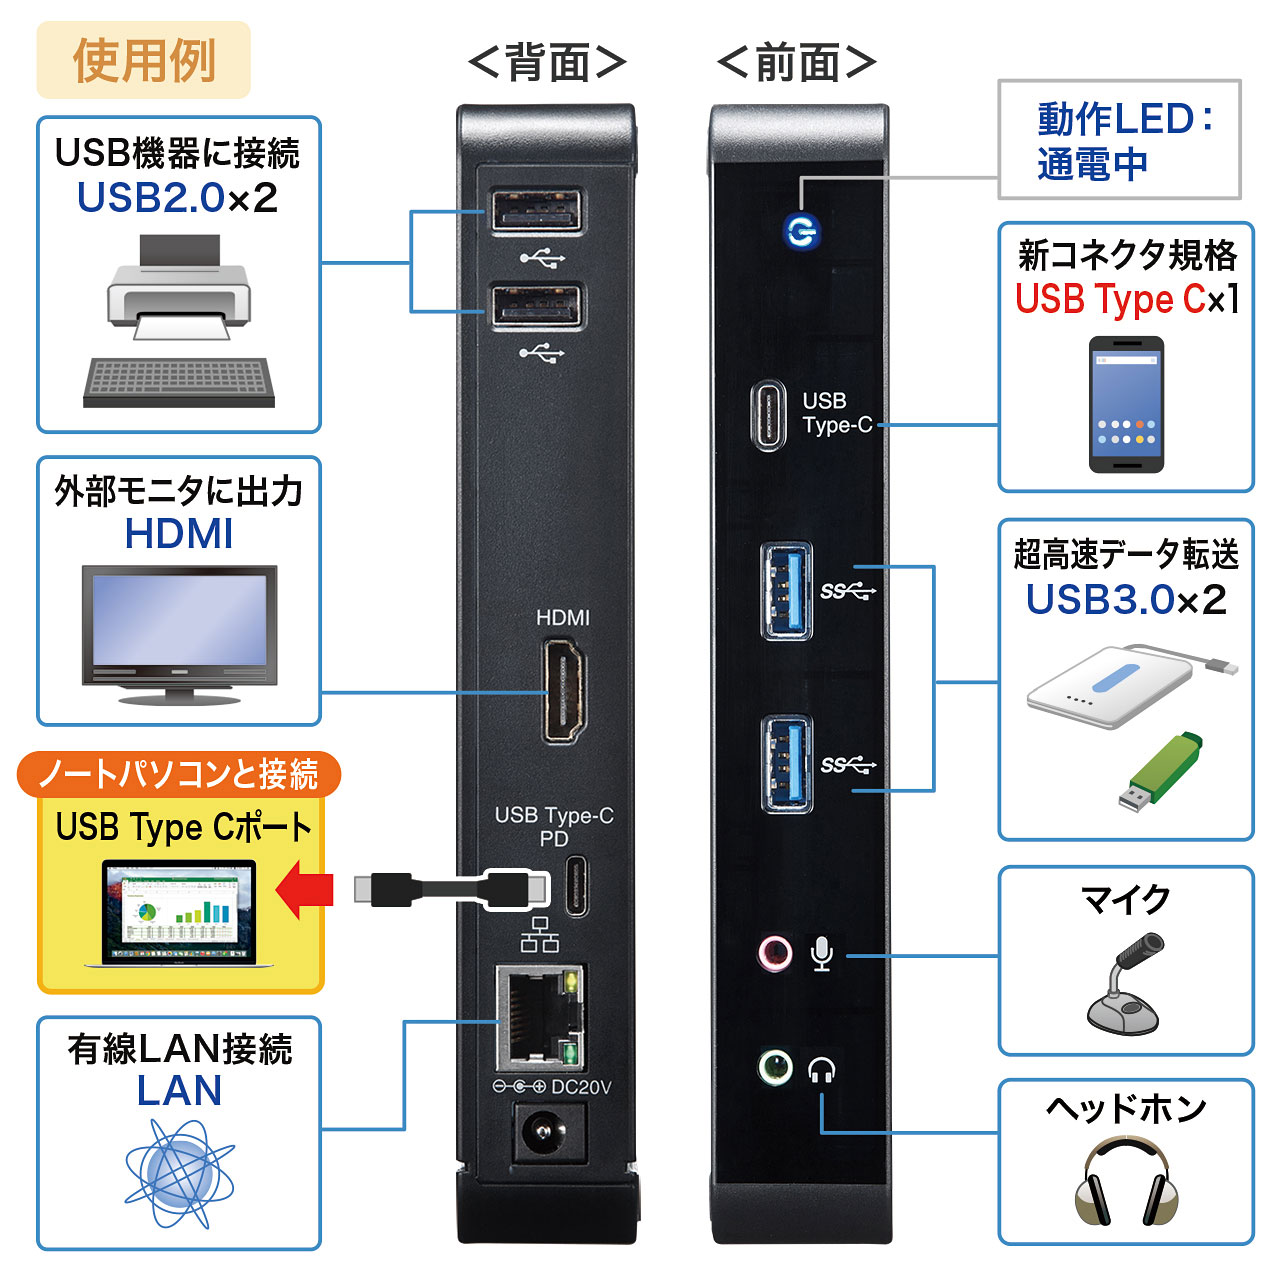 USB Type-C専用 ドッキングステーション